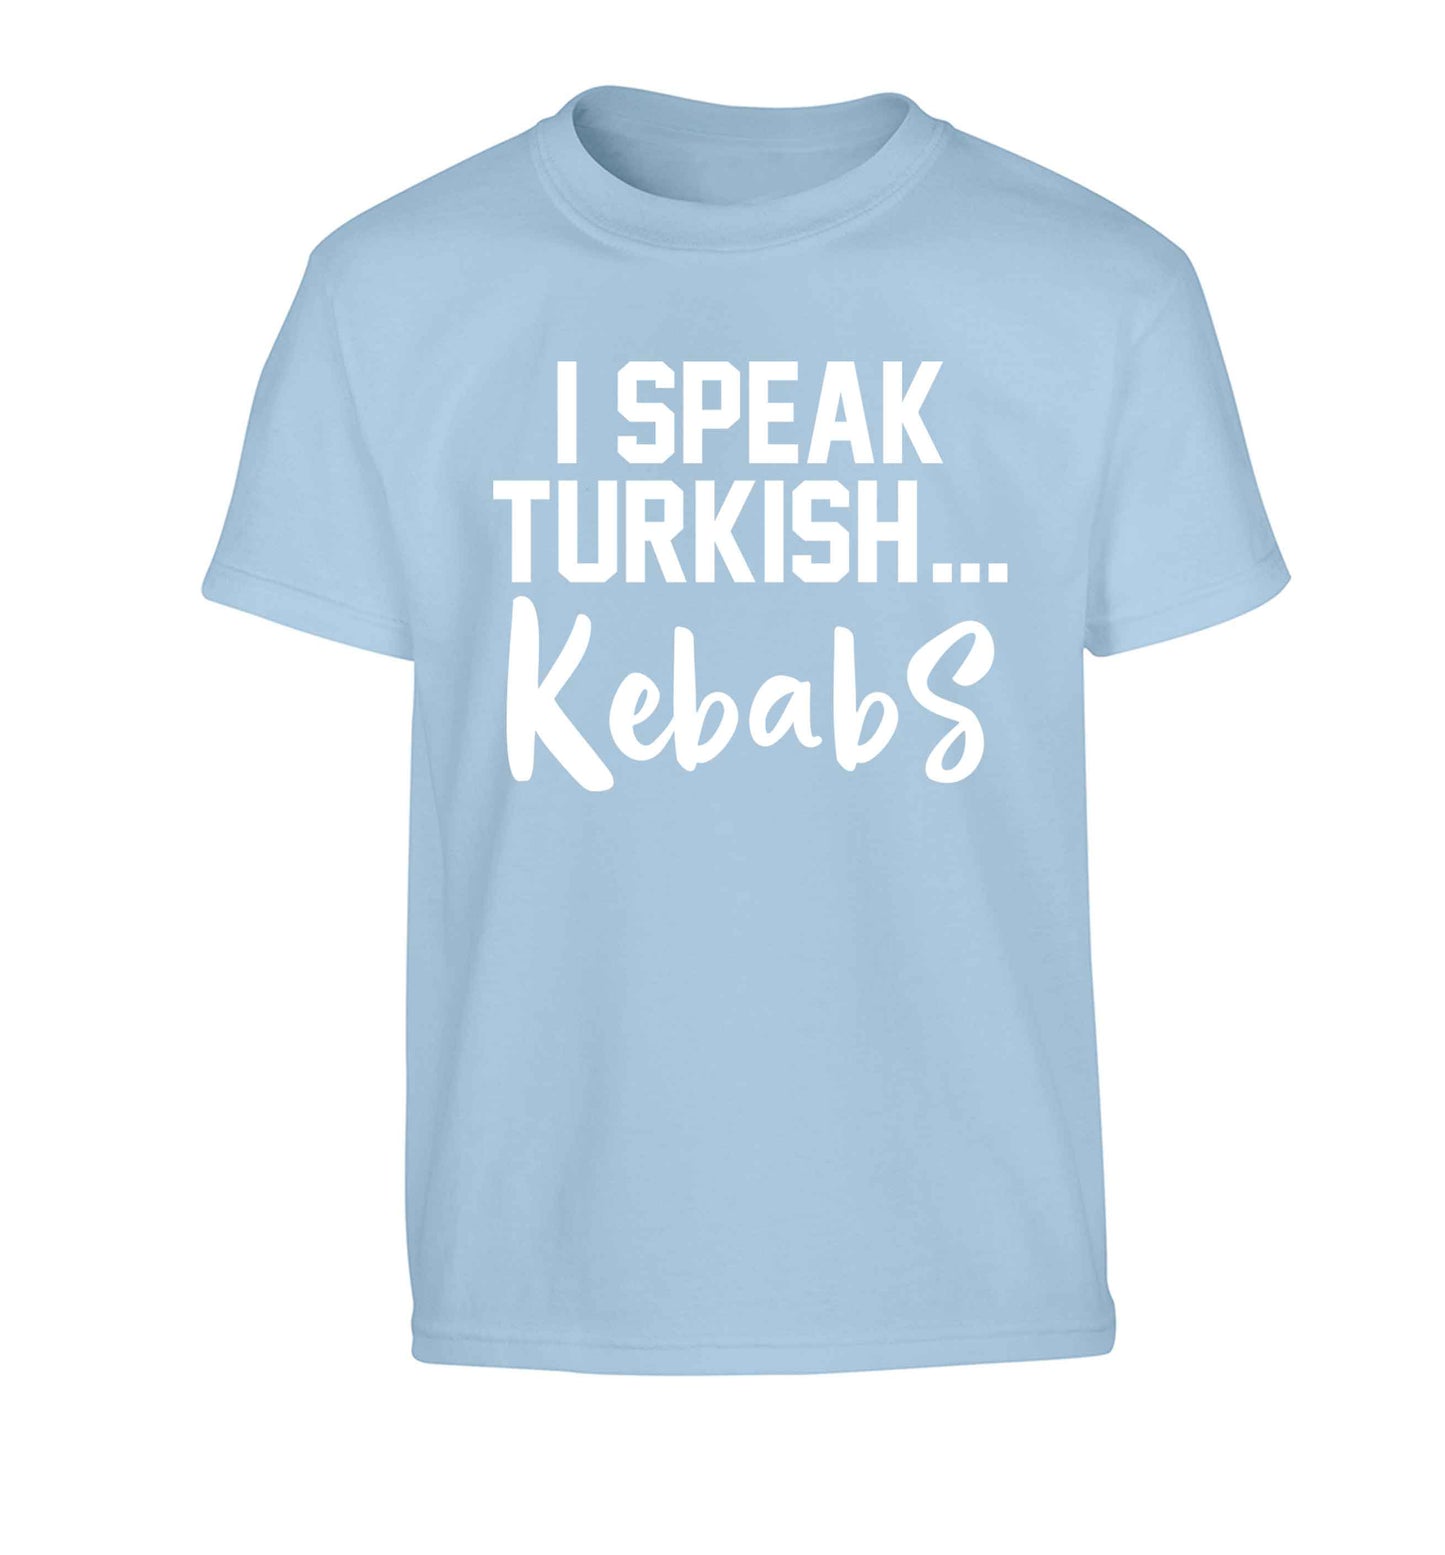 I speak Turkish...kebabs Children's light blue Tshirt 12-13 Years